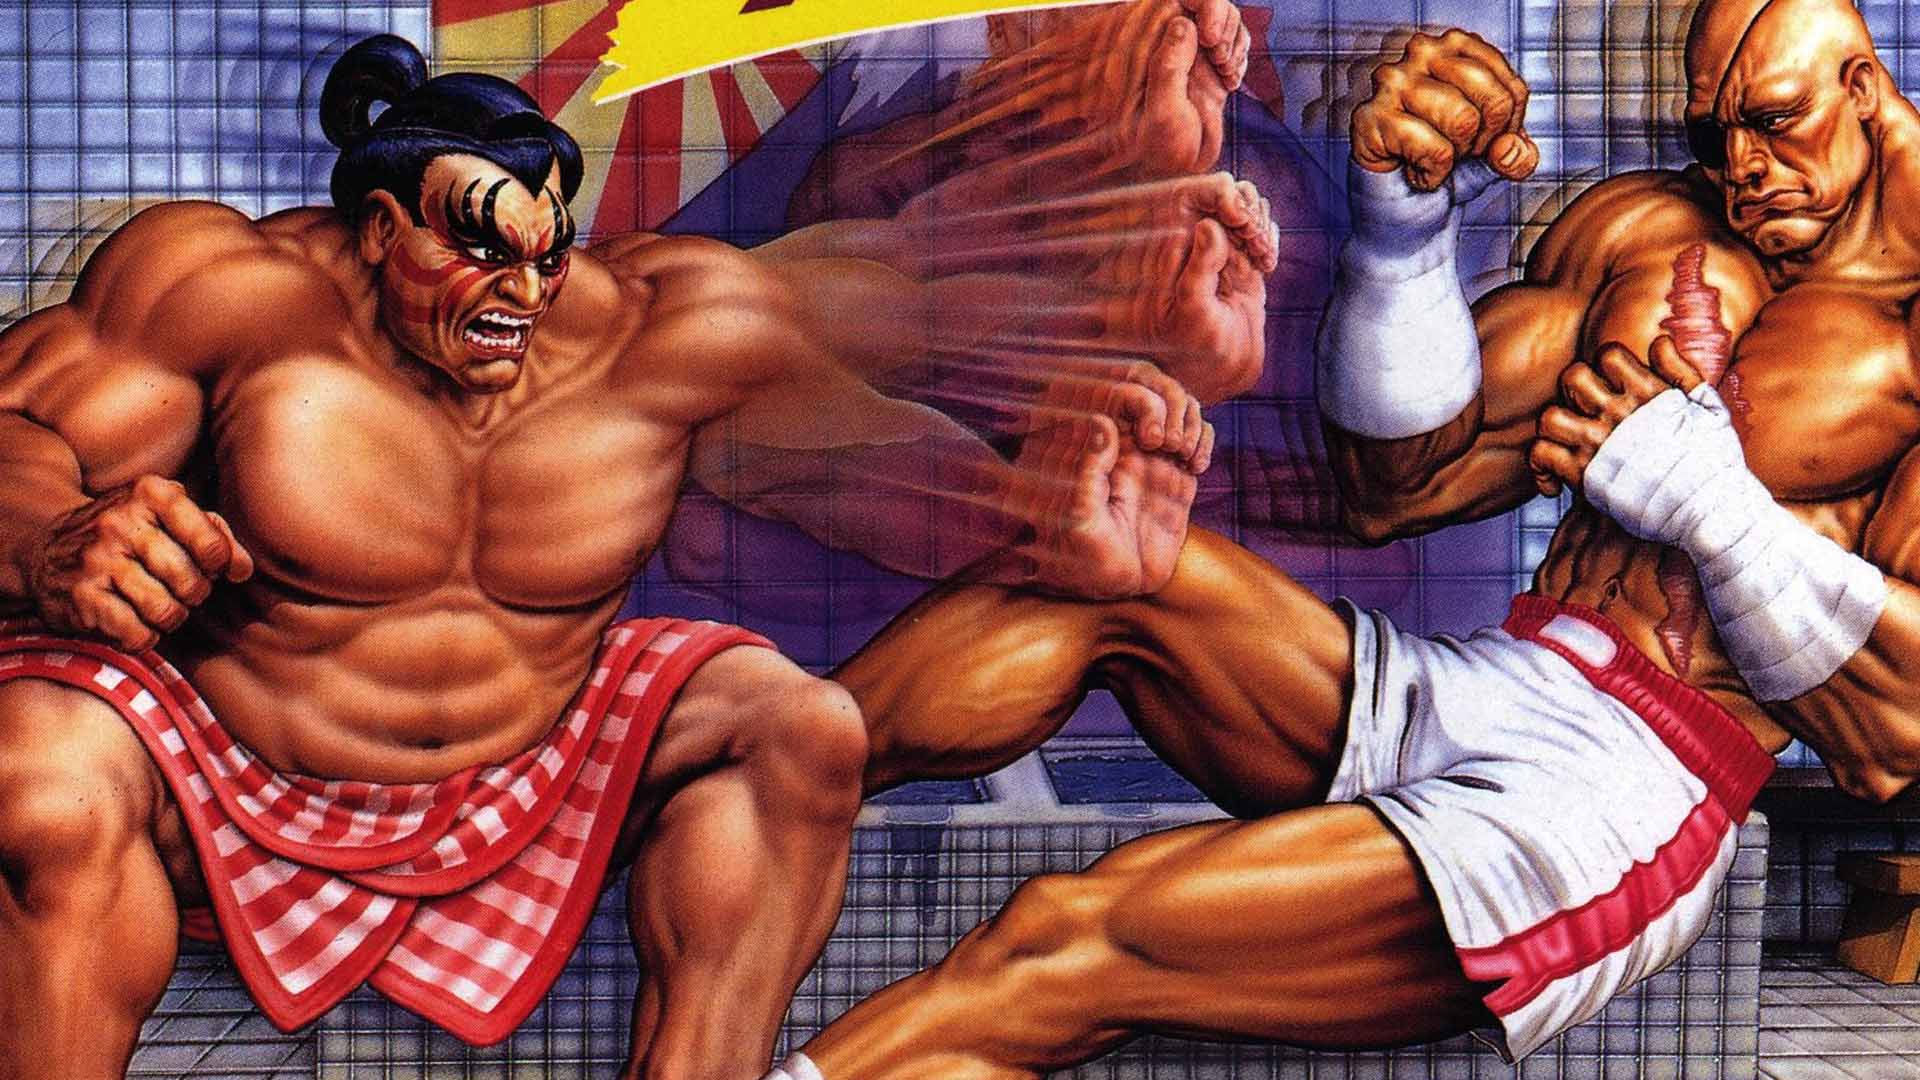 Super September: Street Fighter II's fighting spirit burns